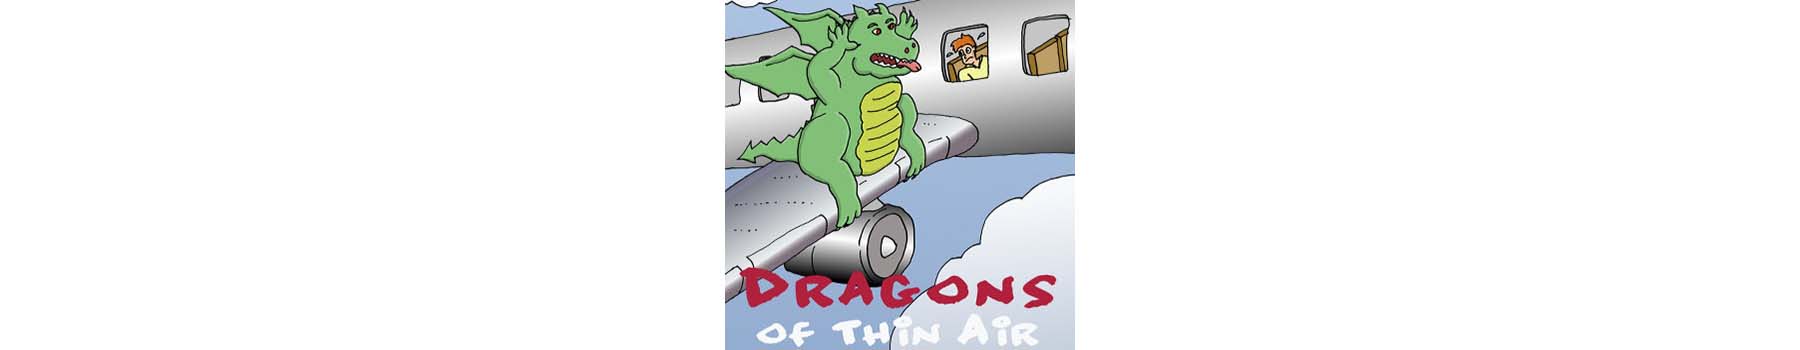 Dragons of Thin Air